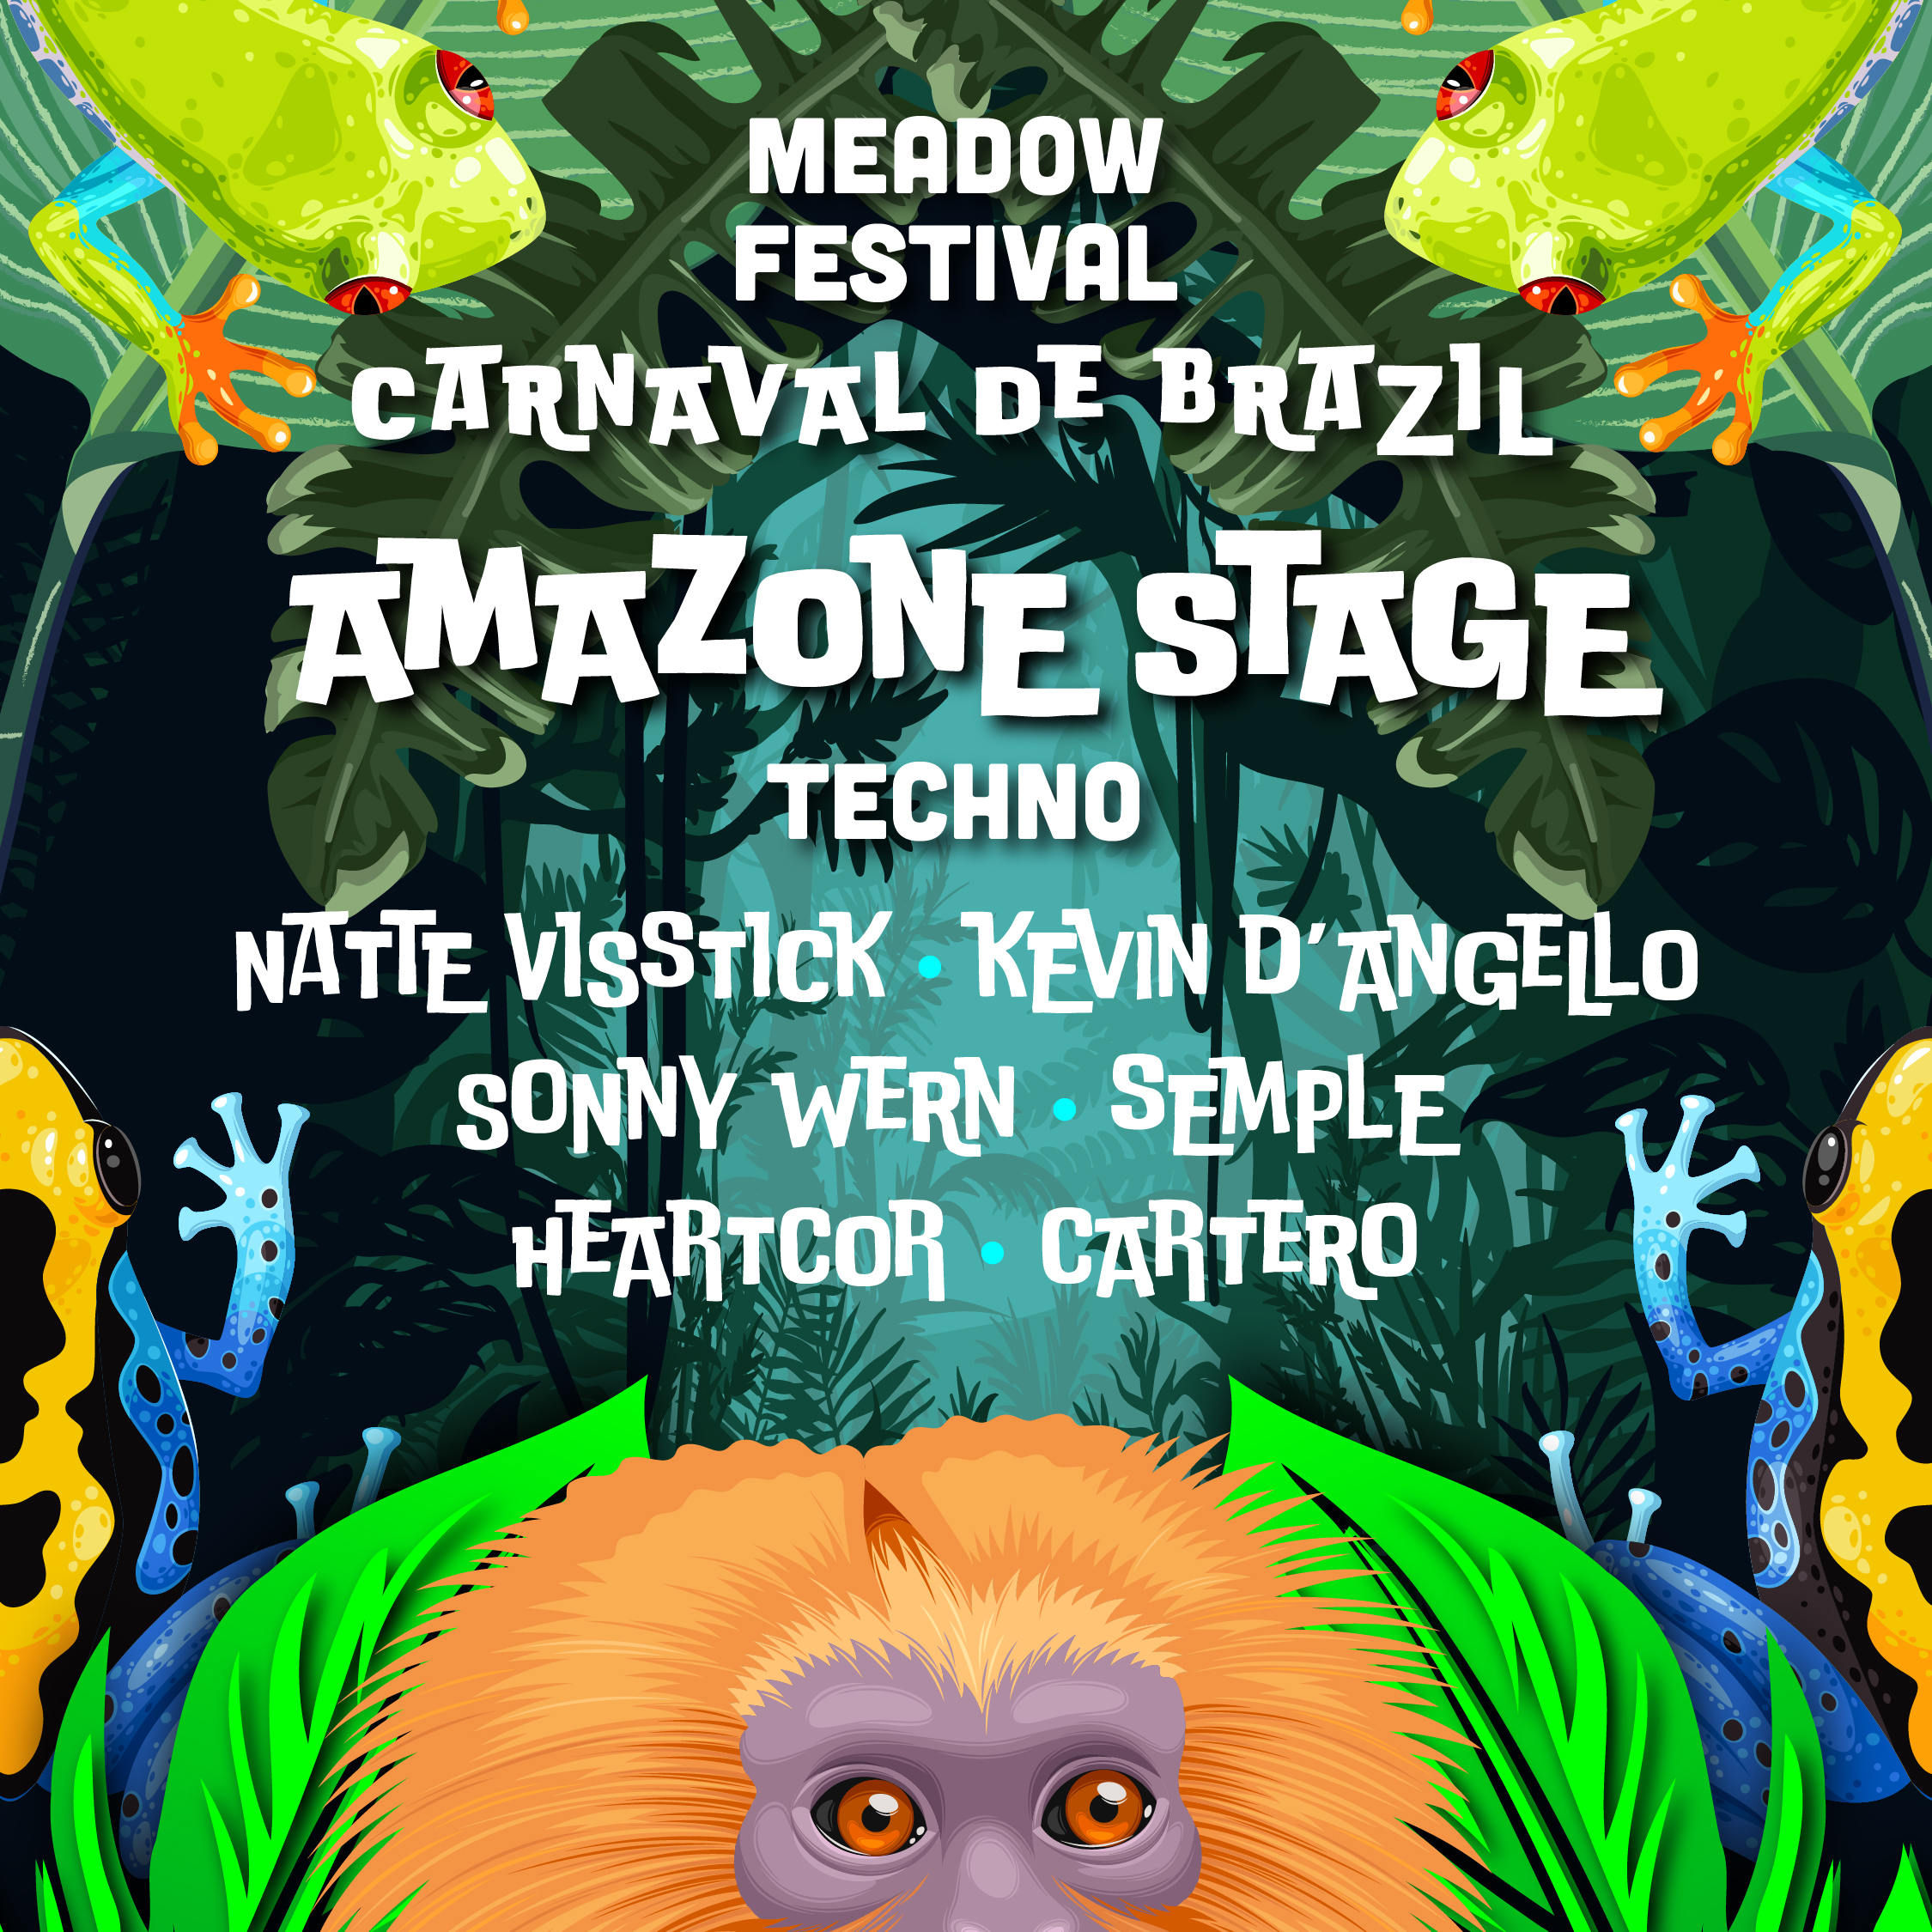 Meadow Festival - Lorenzo - Techno Amazone Stage